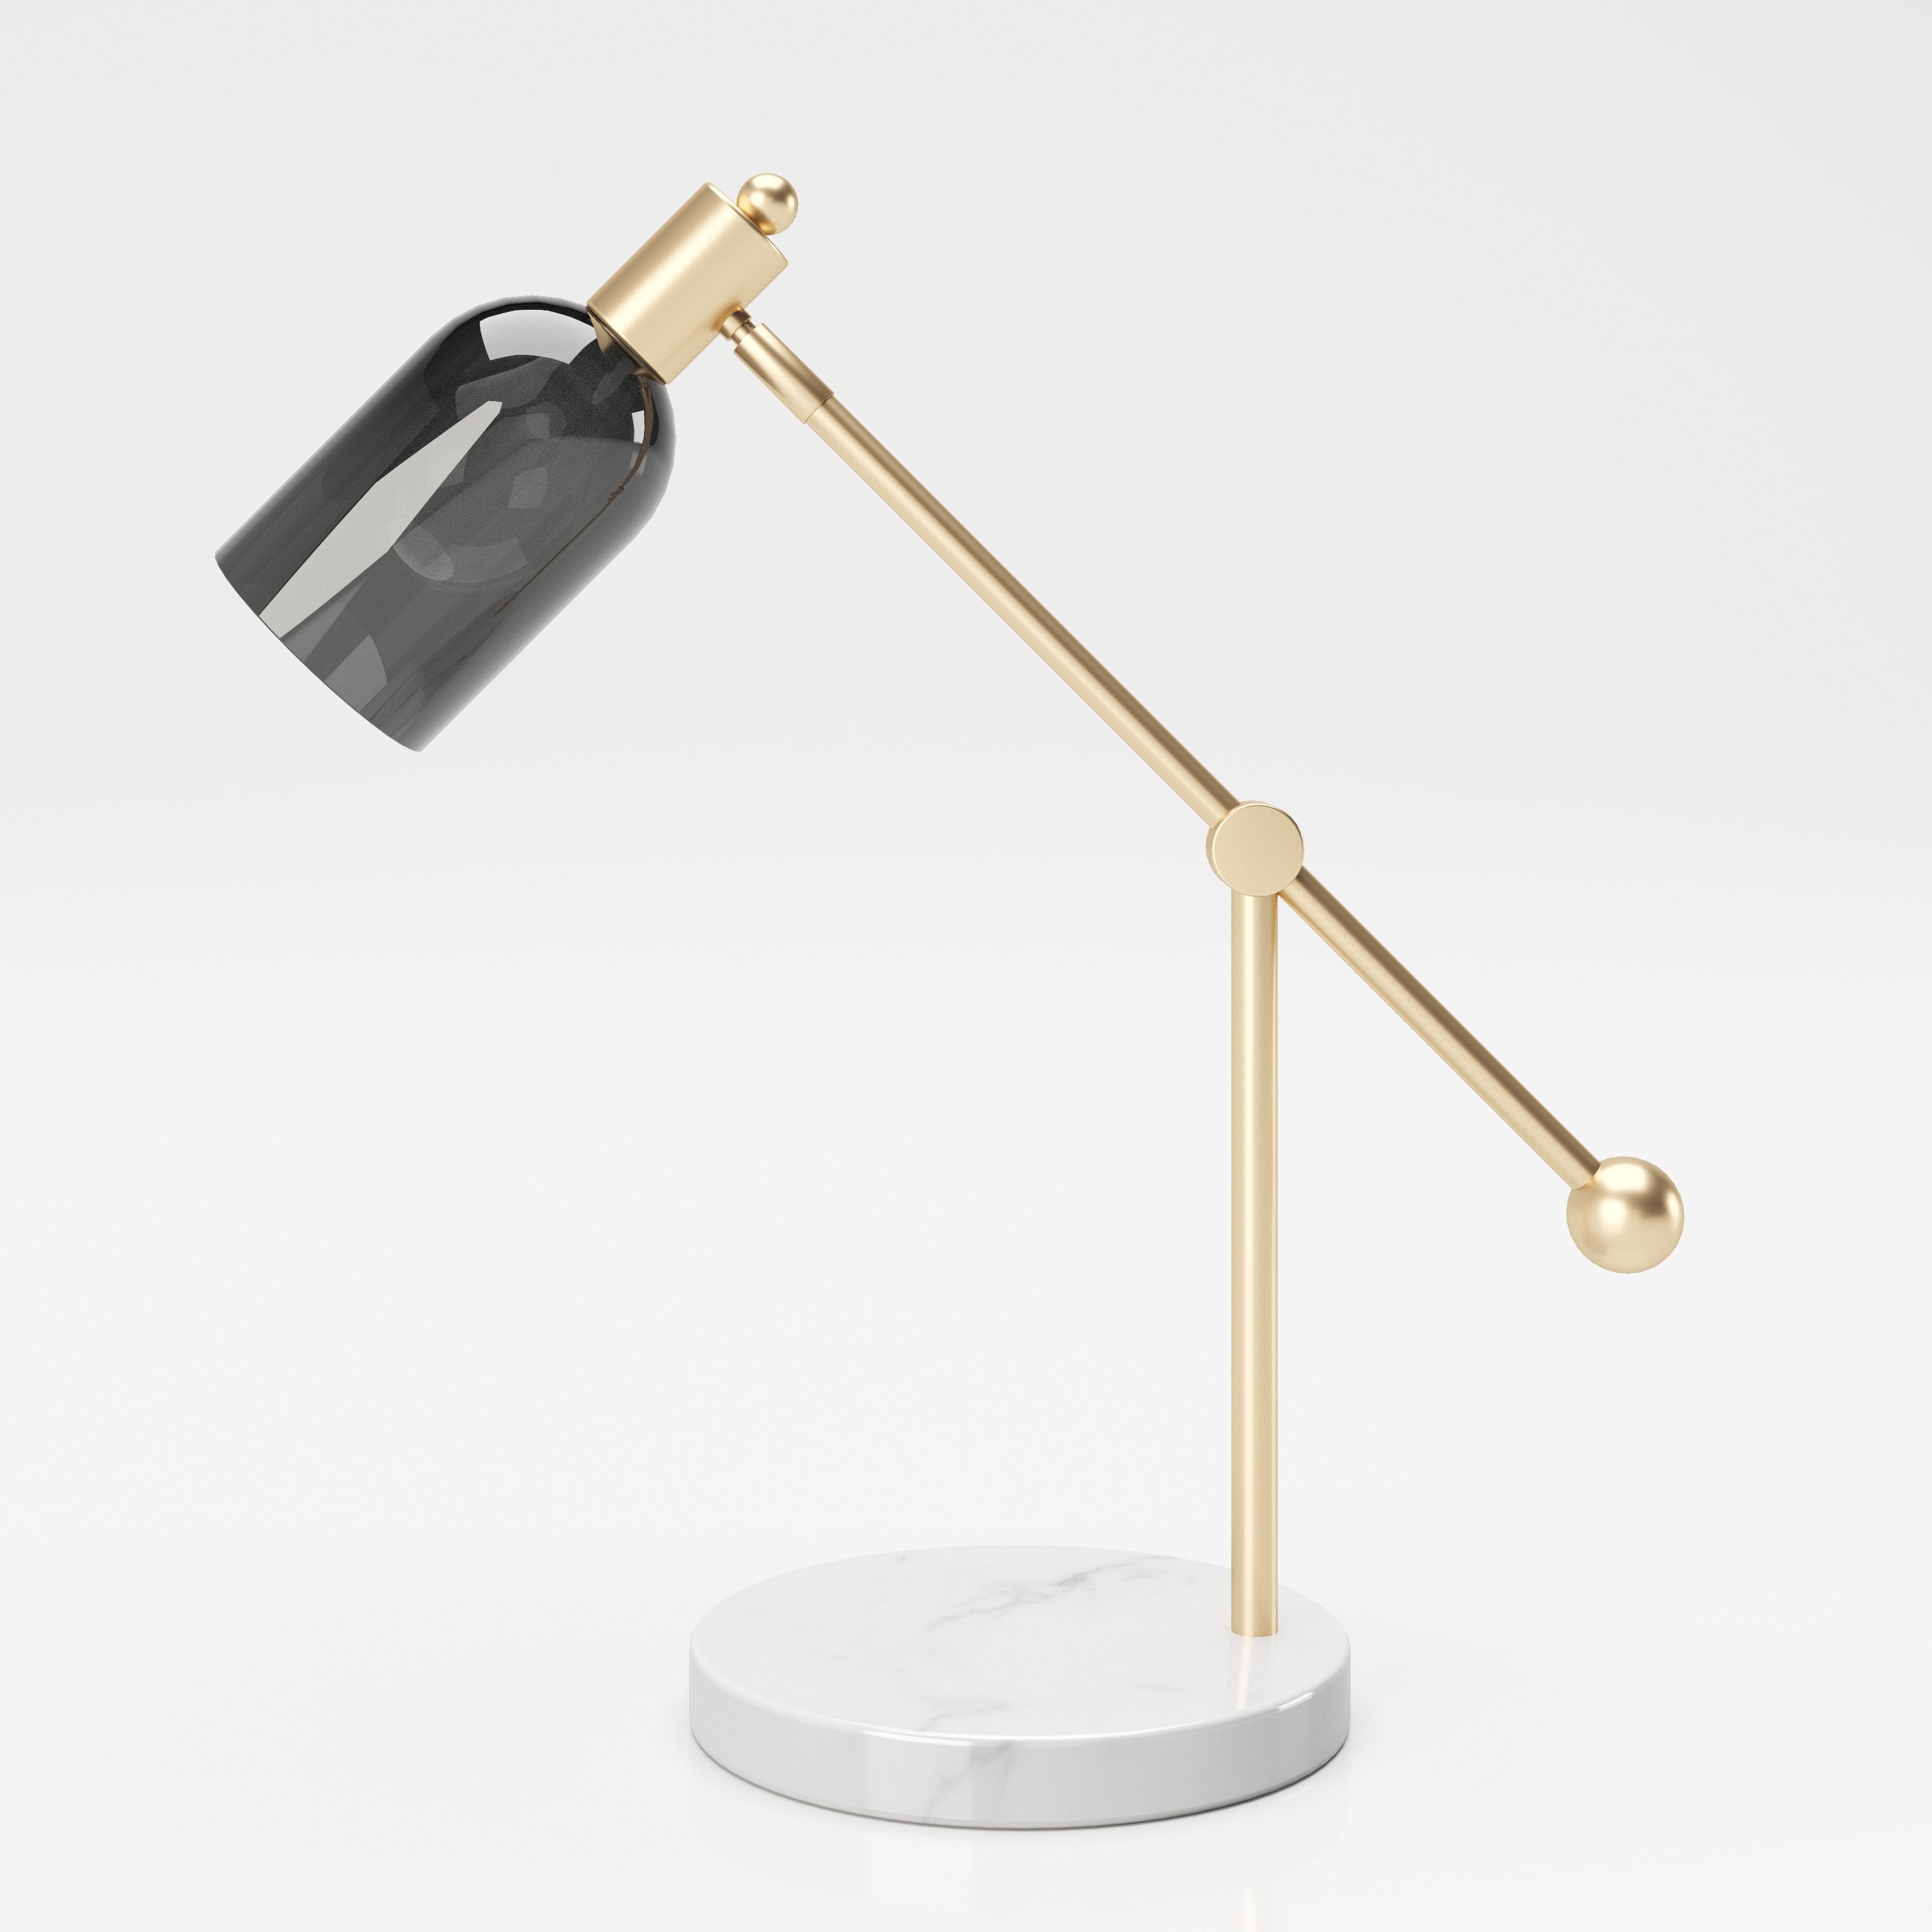 PLAYBOY DESIGNER LAMPE, grauer Glasschirm einrichten-24 – Retro-Design mit Marmorfuss